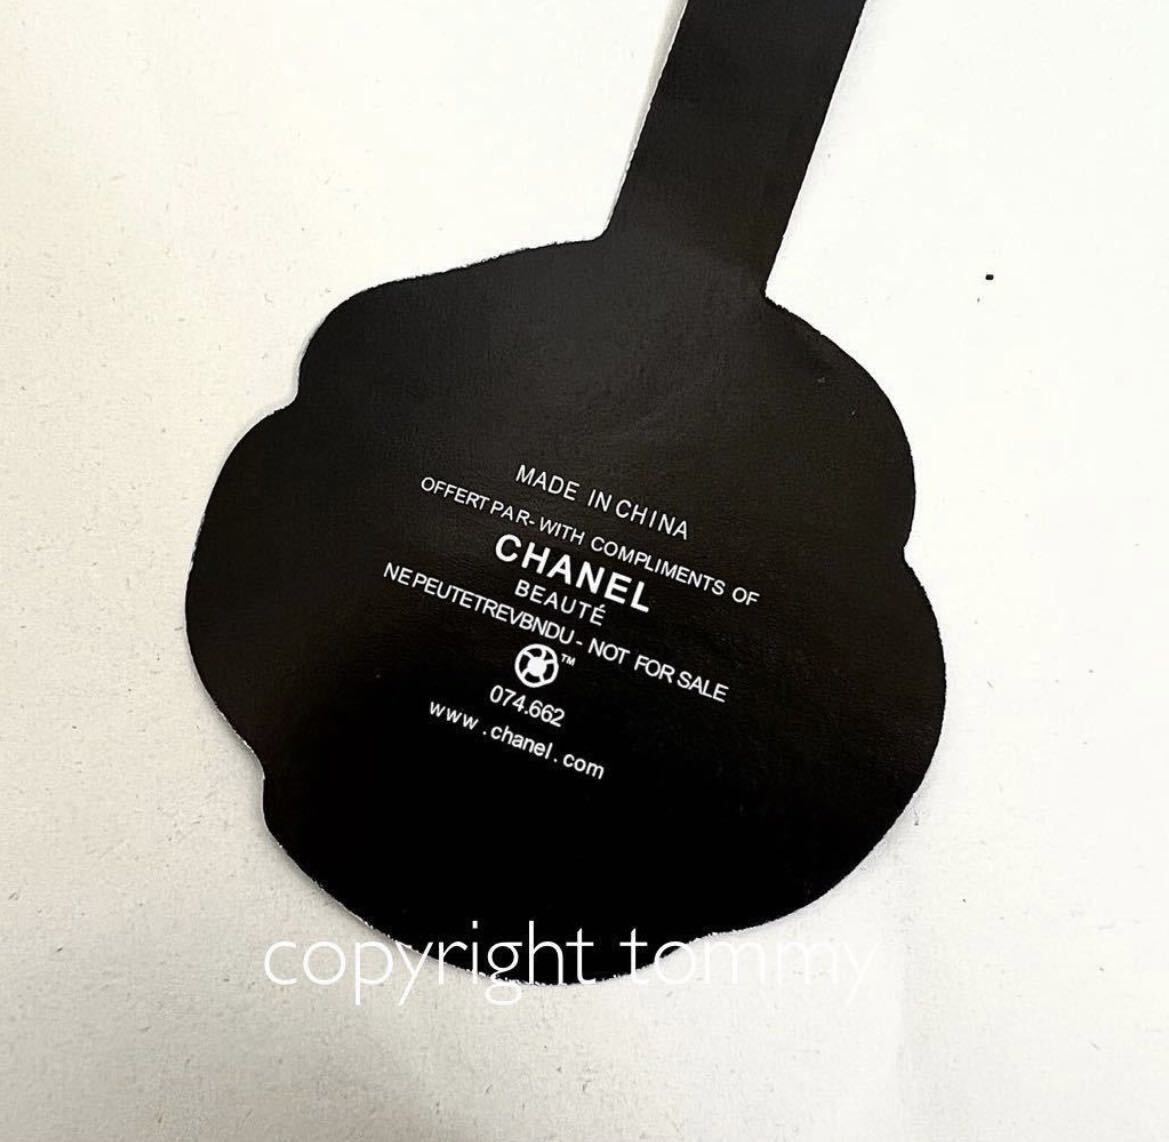 新品未使用 CHANEL シャネル エコバッグ ブラック ノベルティ ブランド 送料無料 ロゴ バッグ カメリア  トートバッグ 非売品 の画像8